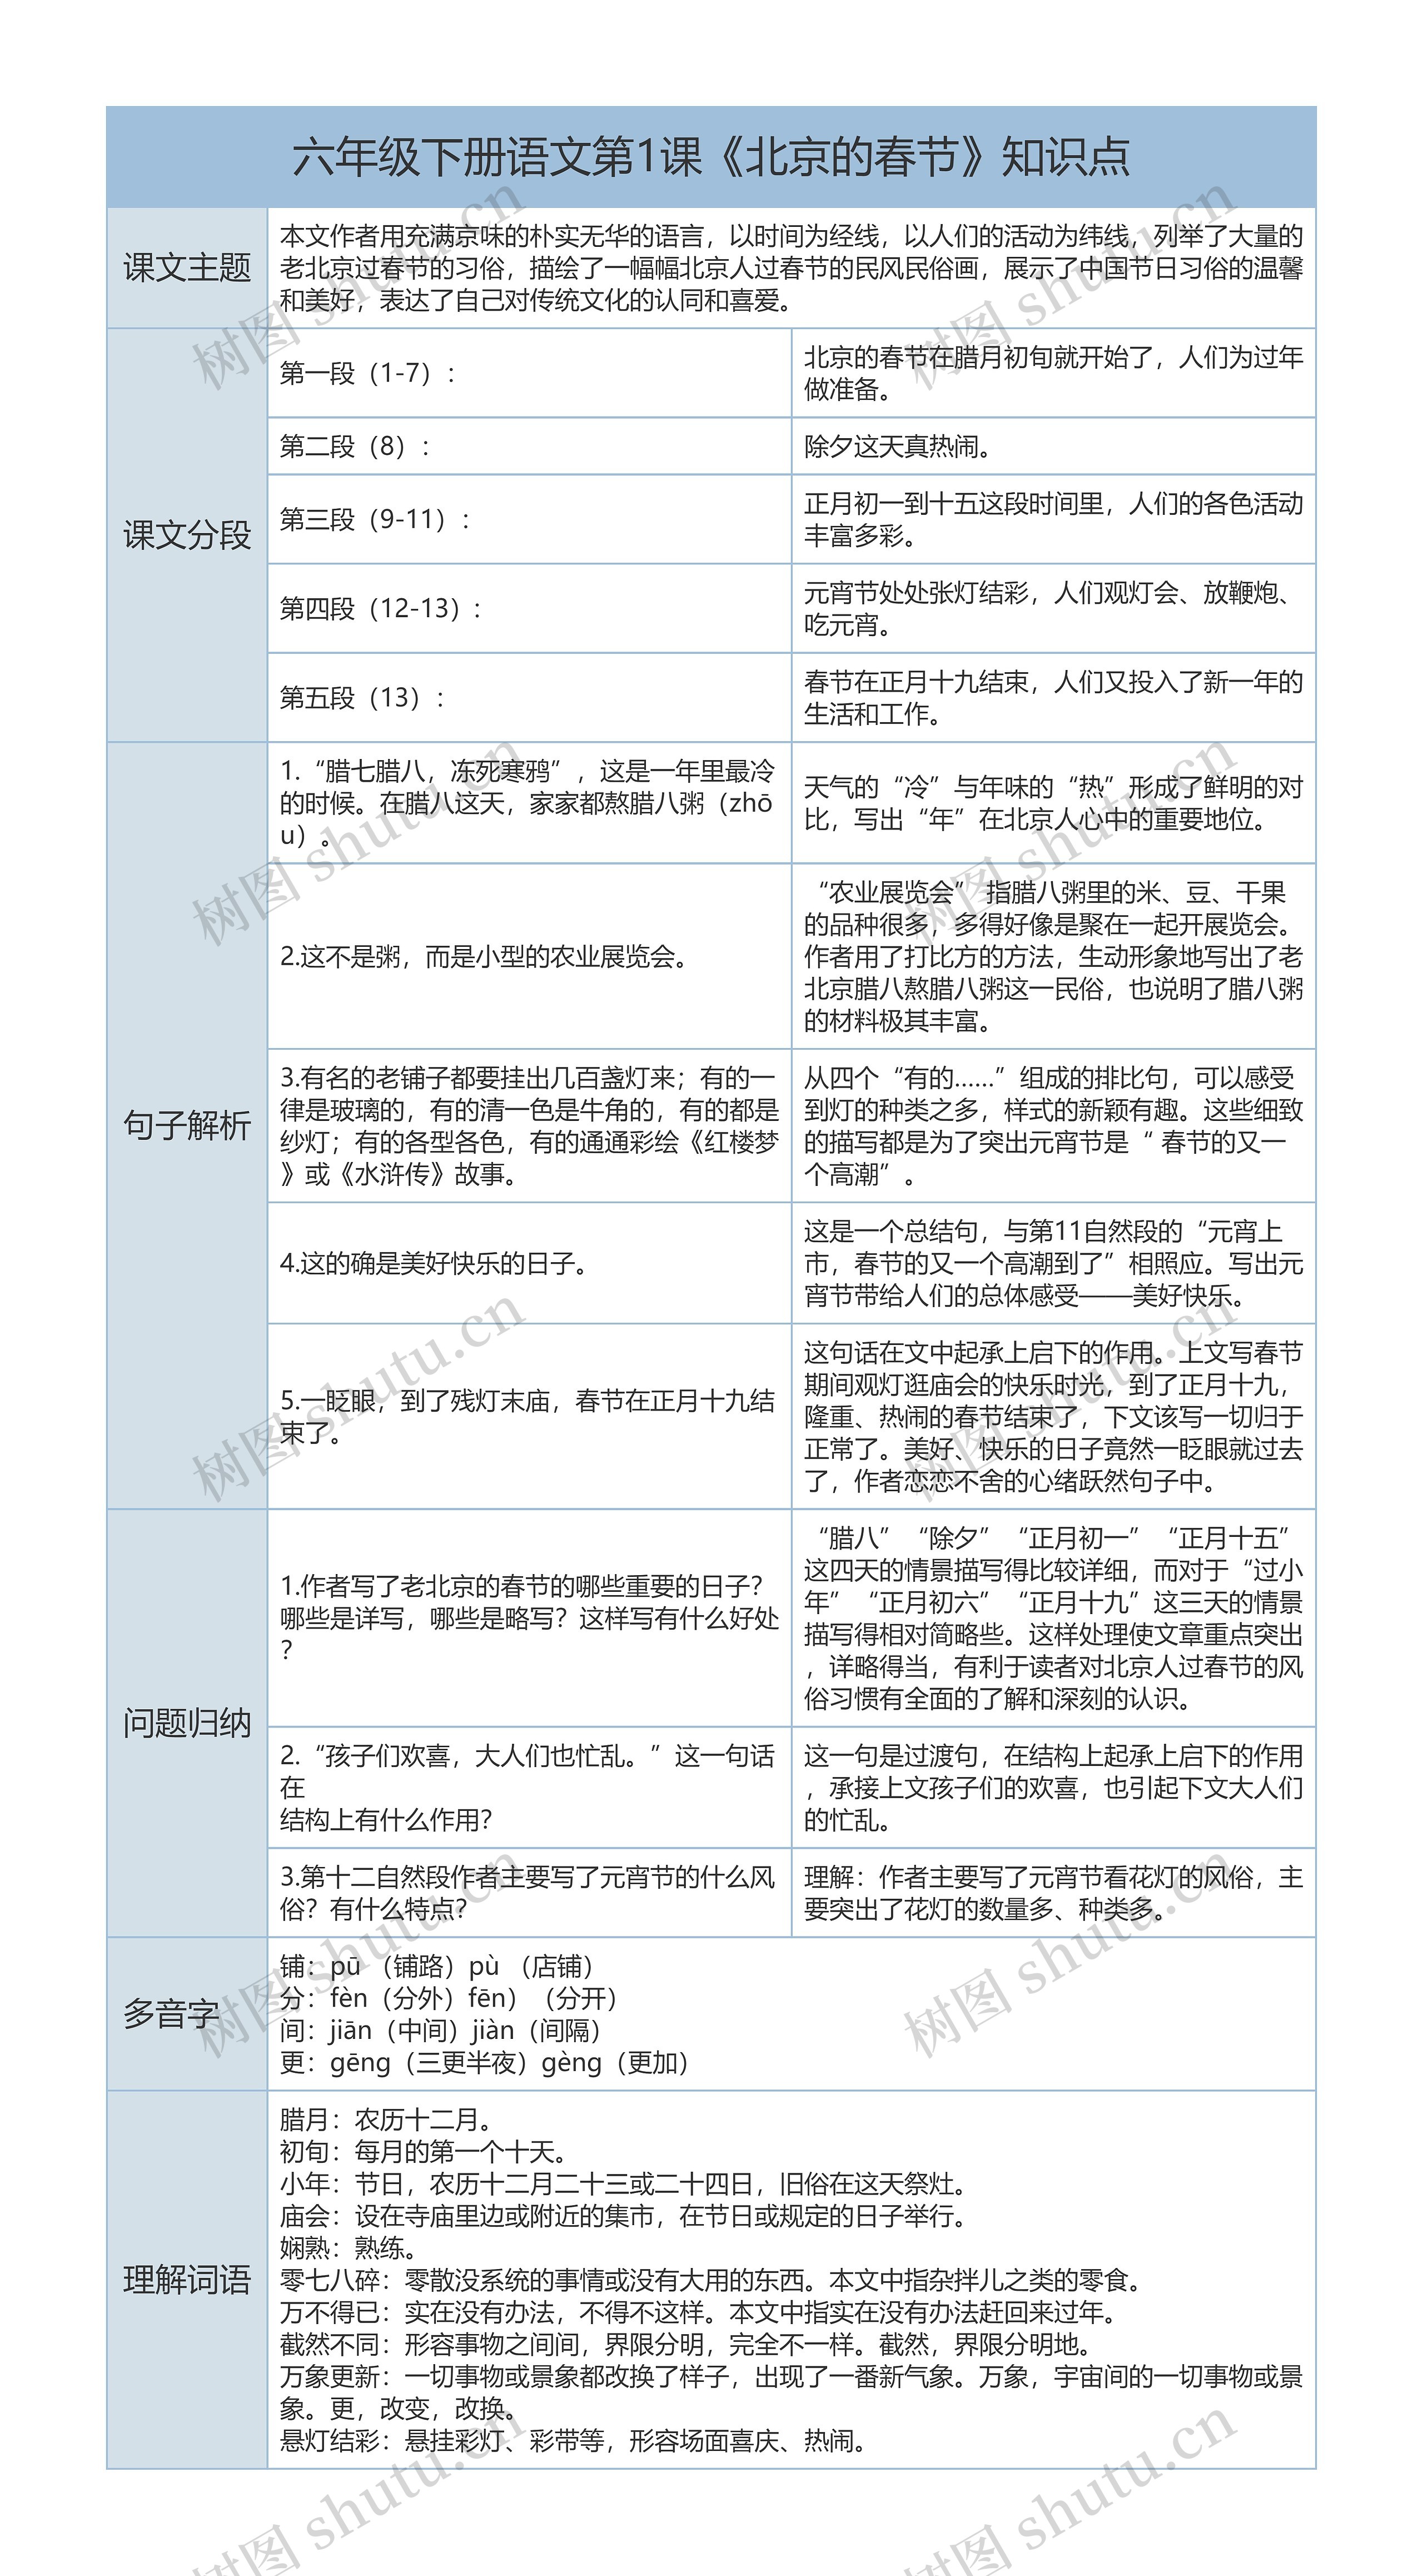 六年级下册语文《北京的春节》课文解析树形表格